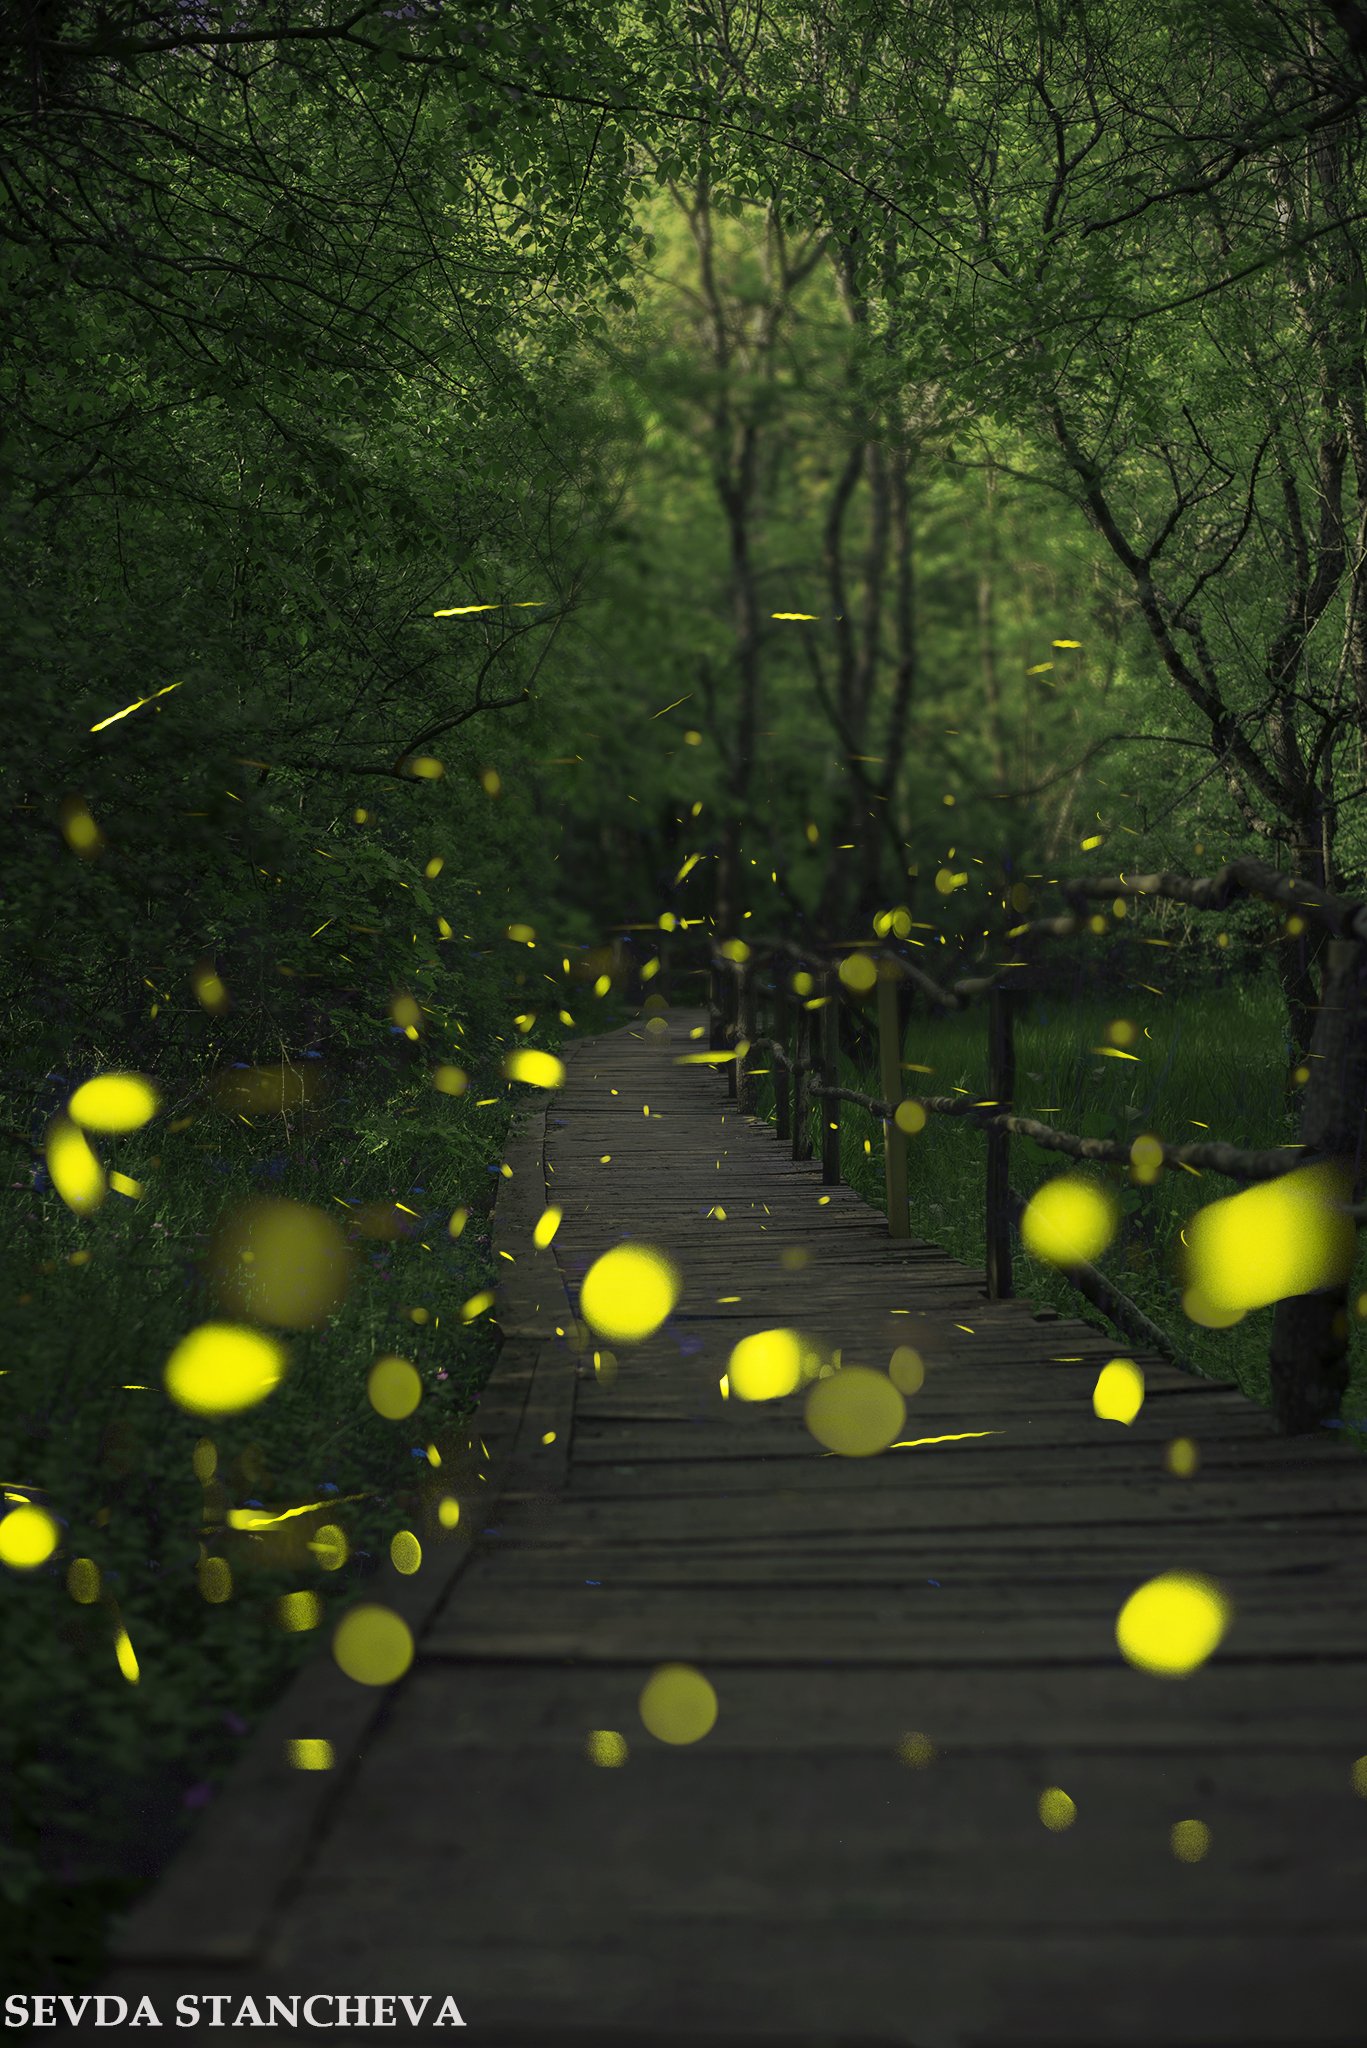 Fireflies, nature, wildlife, Sevda Stancheva